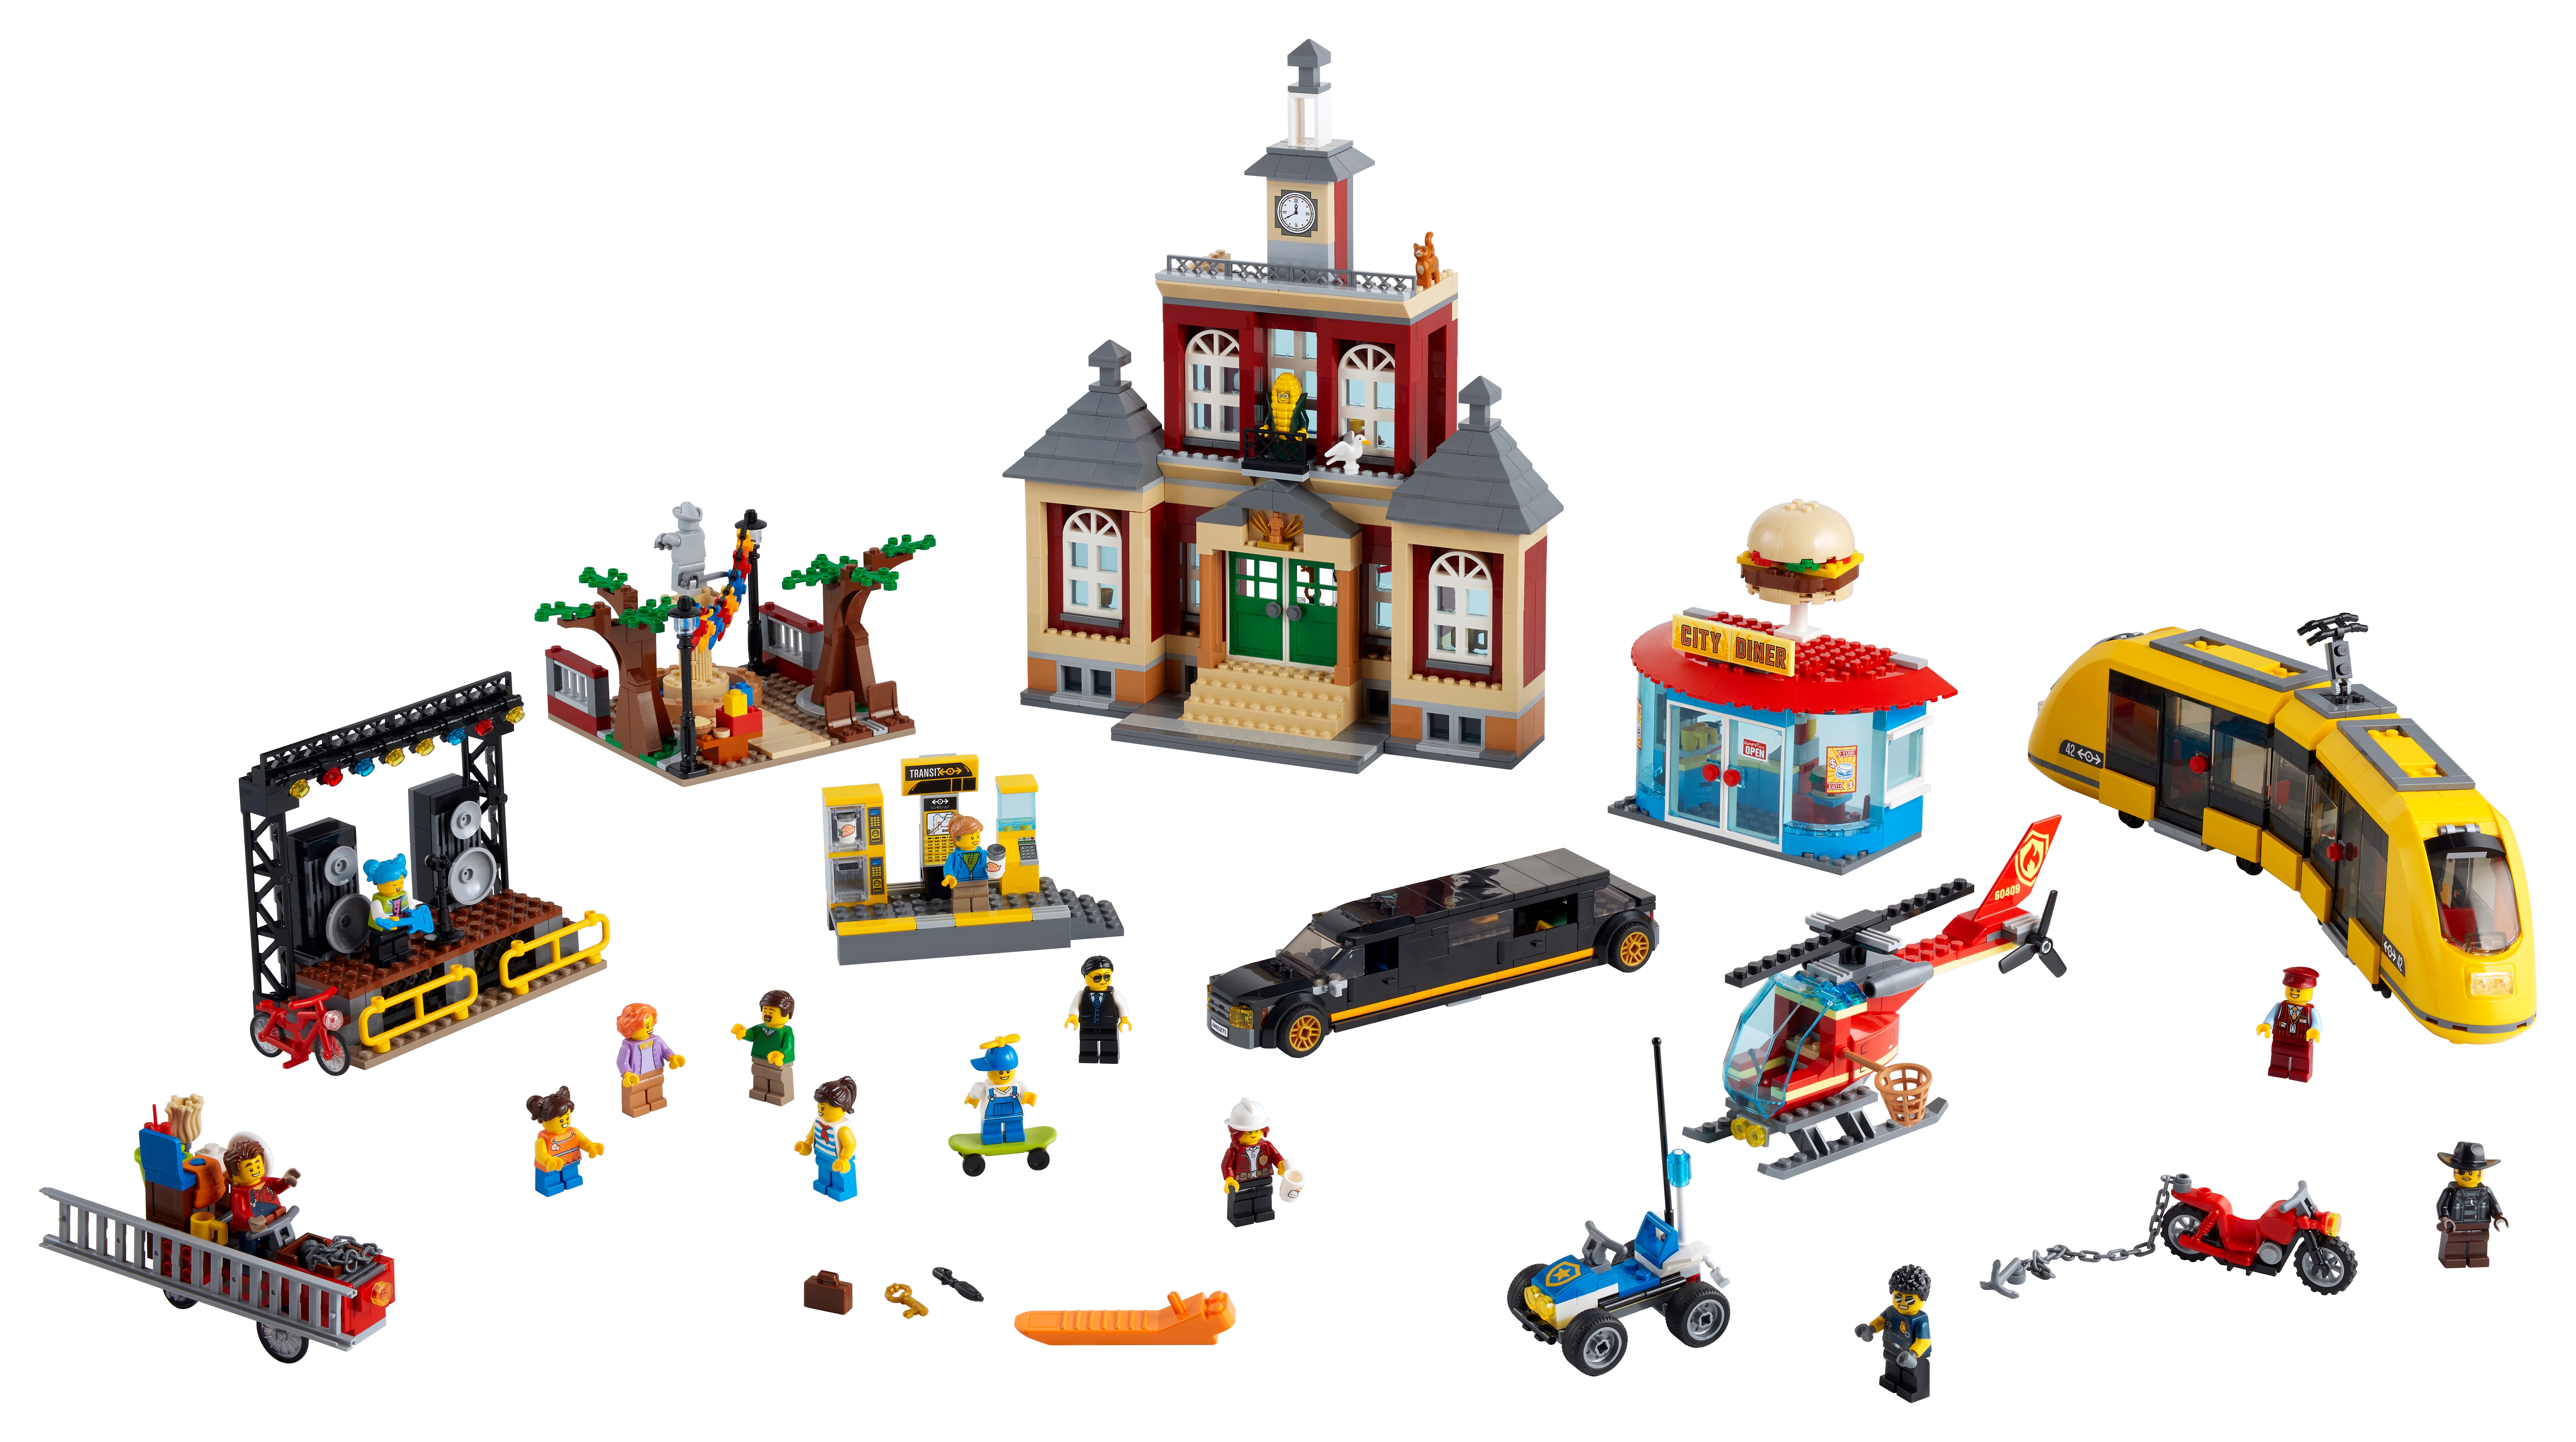 LEGO City 60271 Rynek